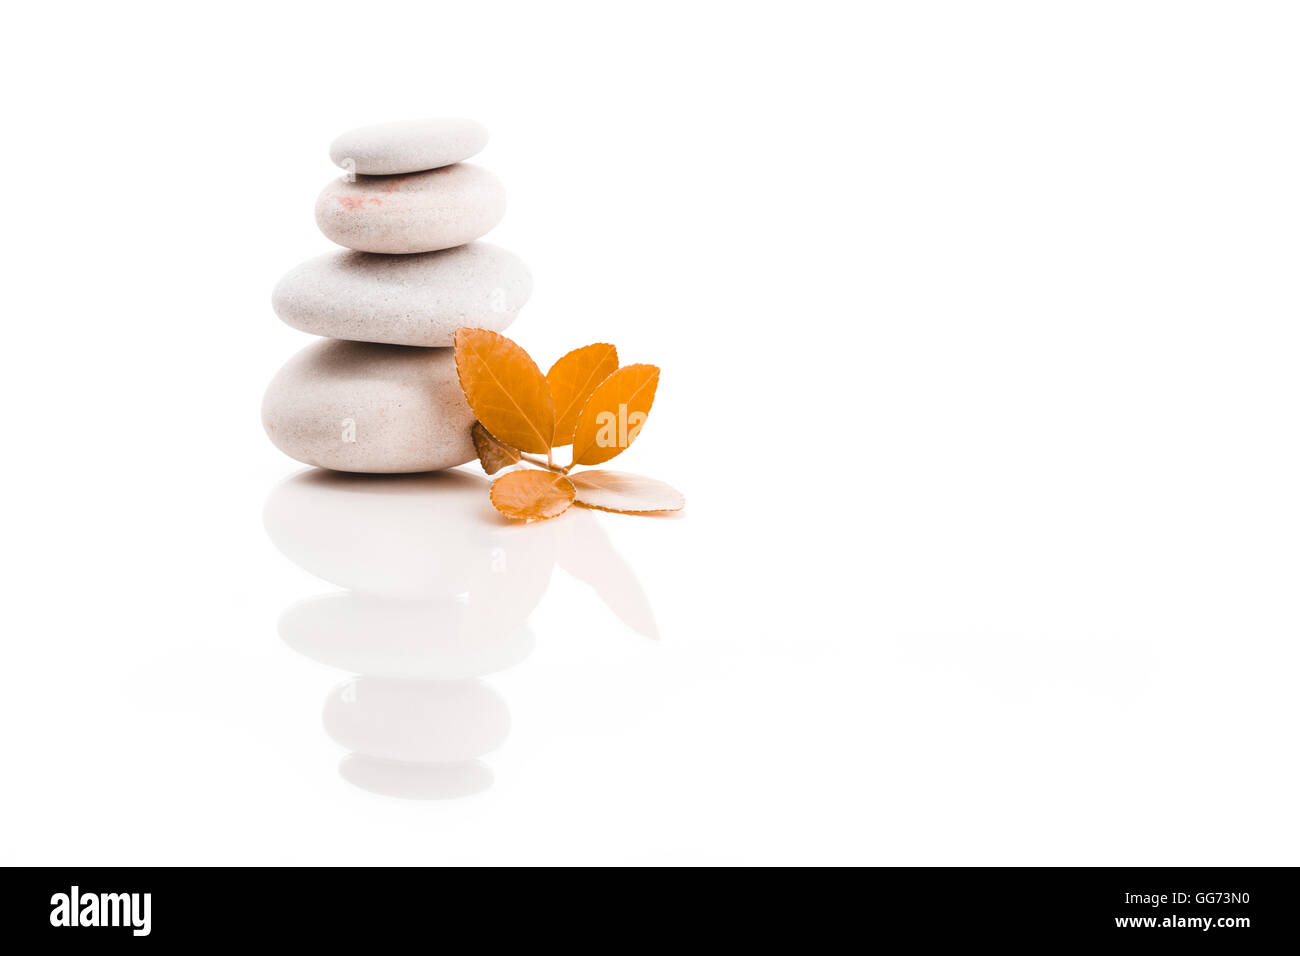 Haufen Ausgleich Kiesel Steinen und orange Blatt, wie ZEN Stone, isoliert auf weißem Hintergrund, Spa Wellness ruhige Szene Konzeptionierung Stockfoto